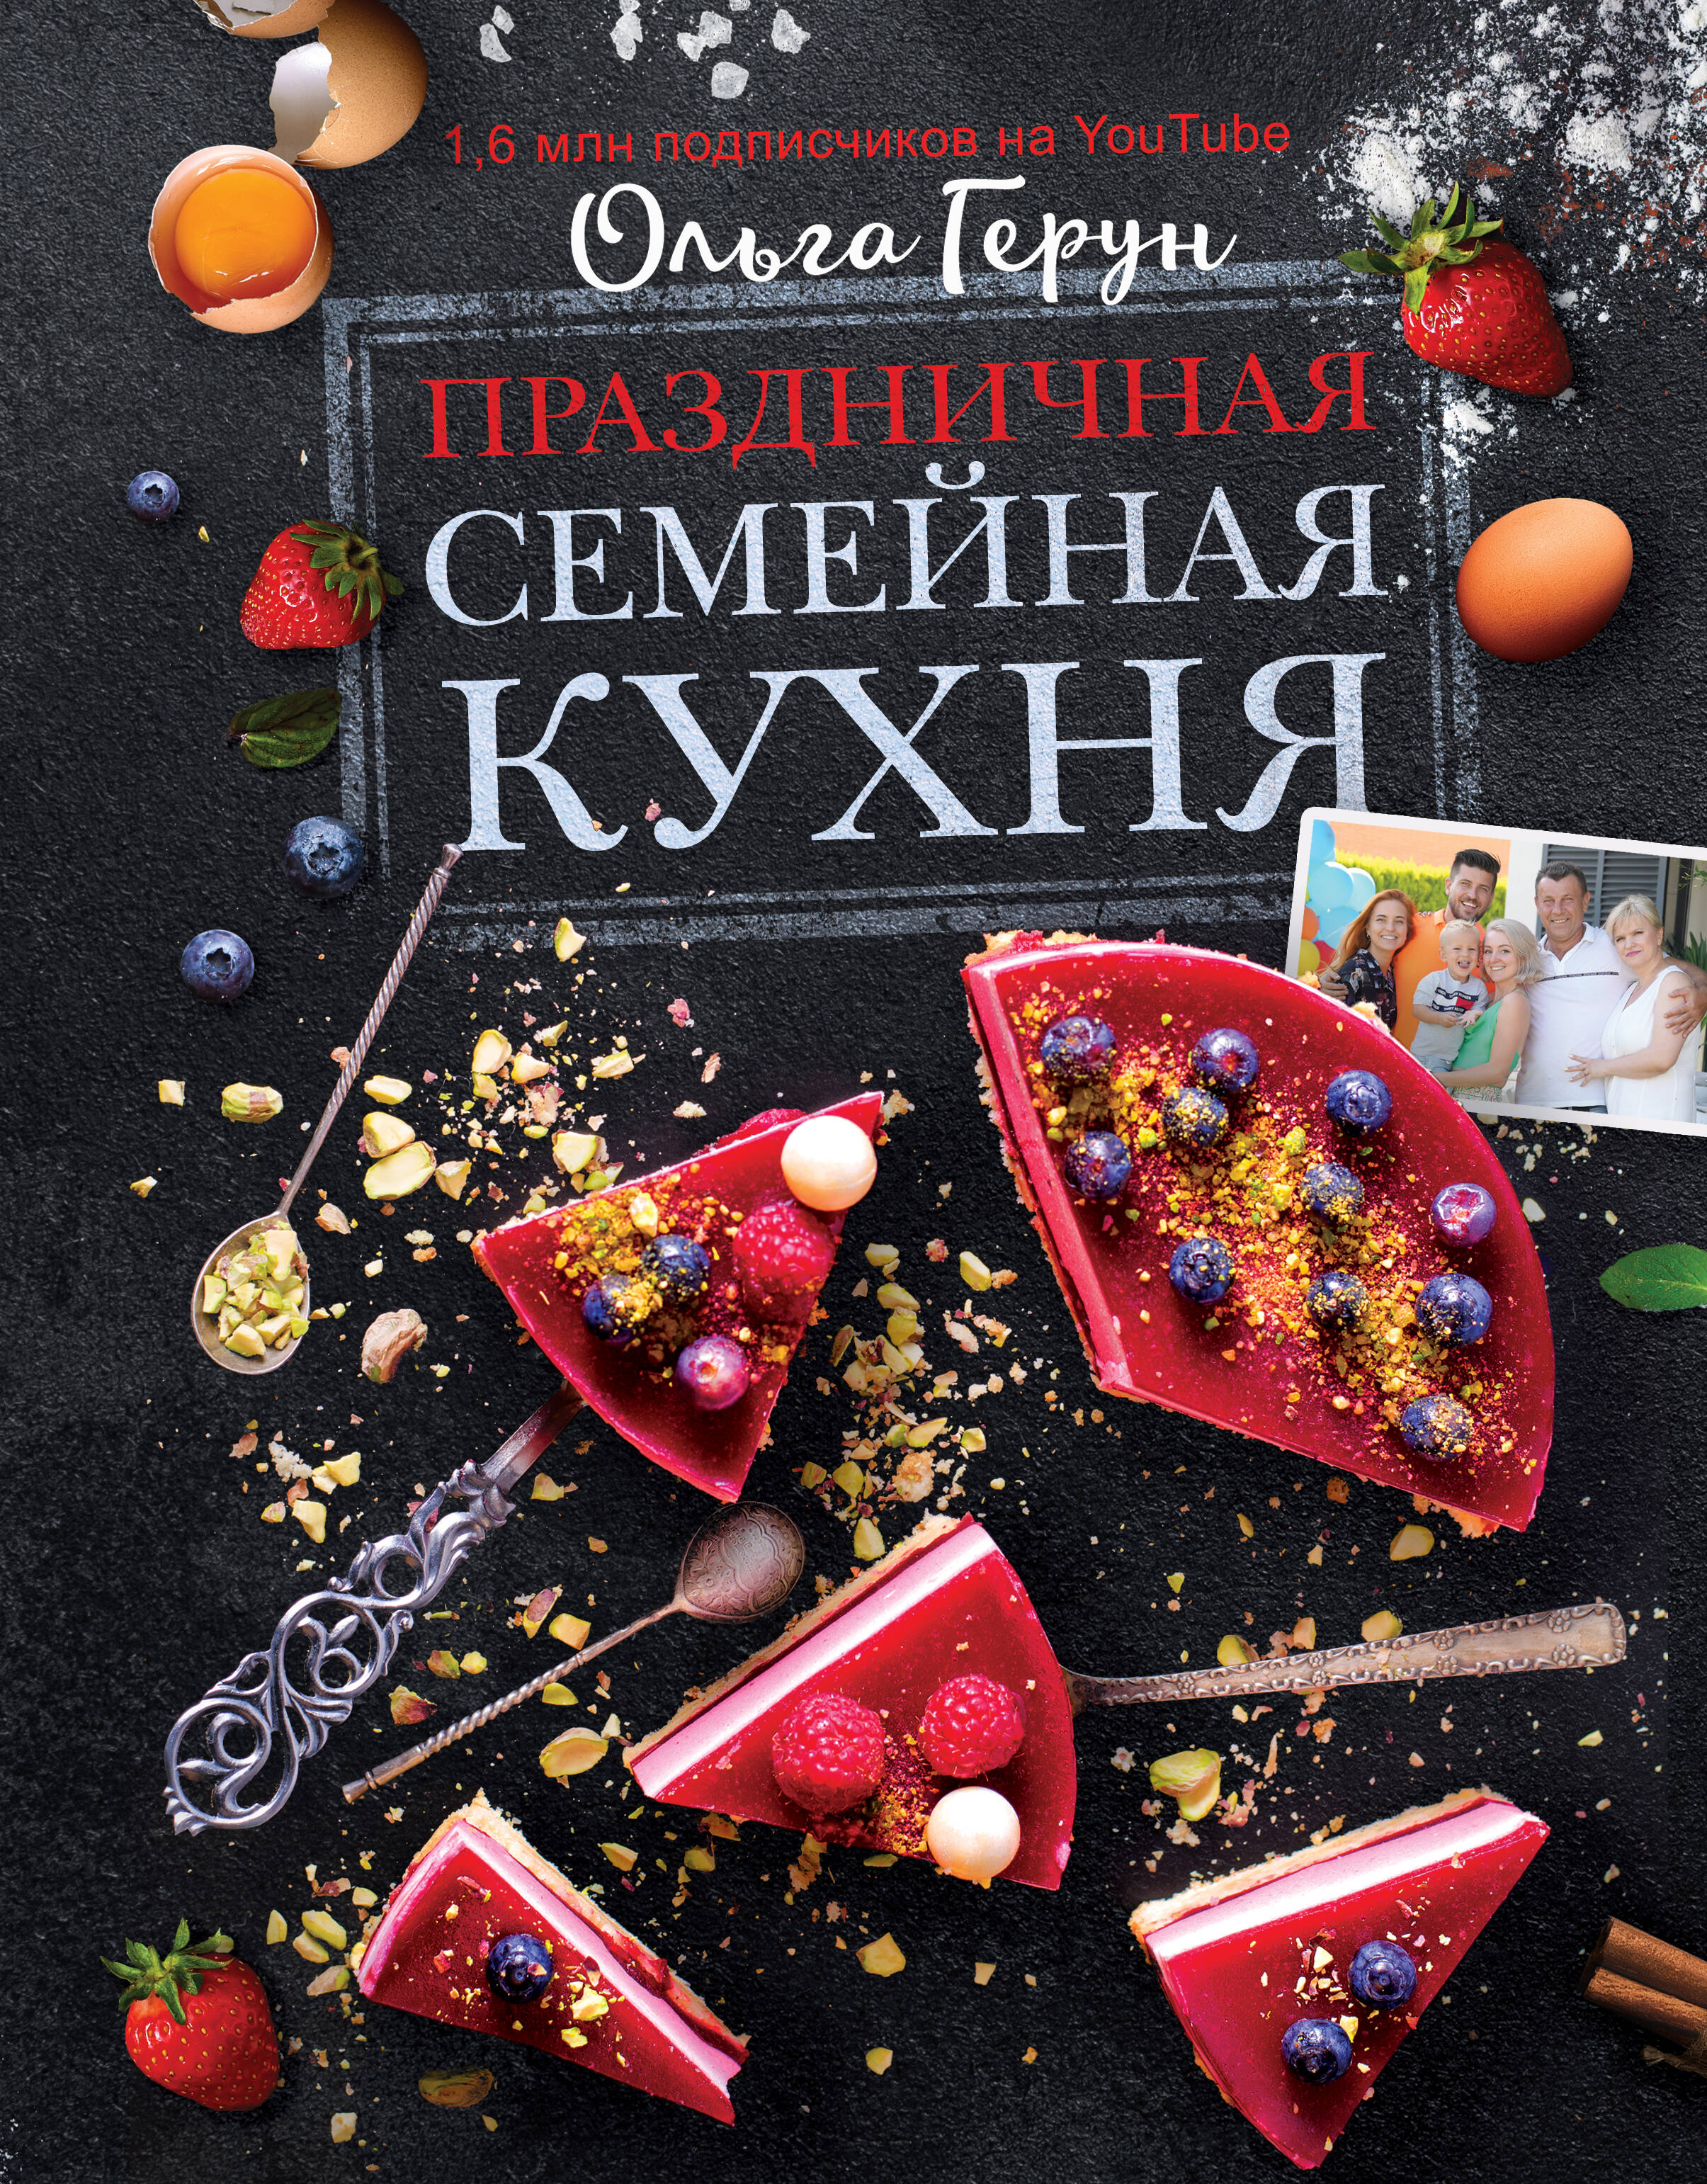 Герун Ольга Праздничная семейная кухня праздничная семейная кухня